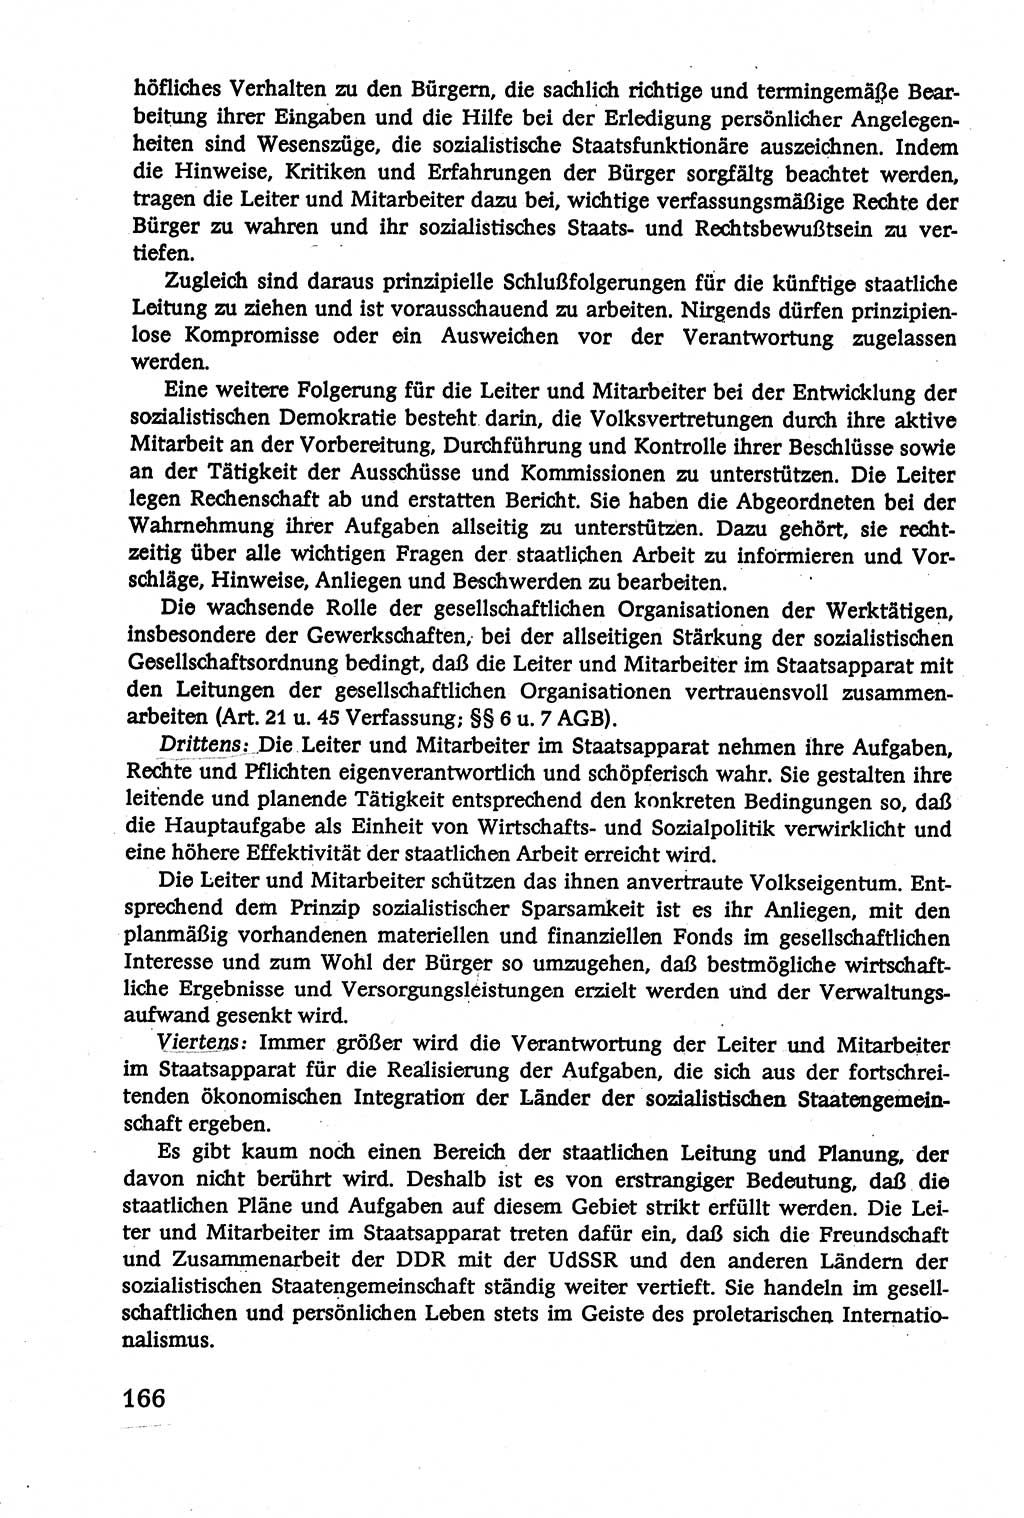 Verwaltungsrecht [Deutsche Demokratische Republik (DDR)], Lehrbuch 1979, Seite 166 (Verw.-R. DDR Lb. 1979, S. 166)